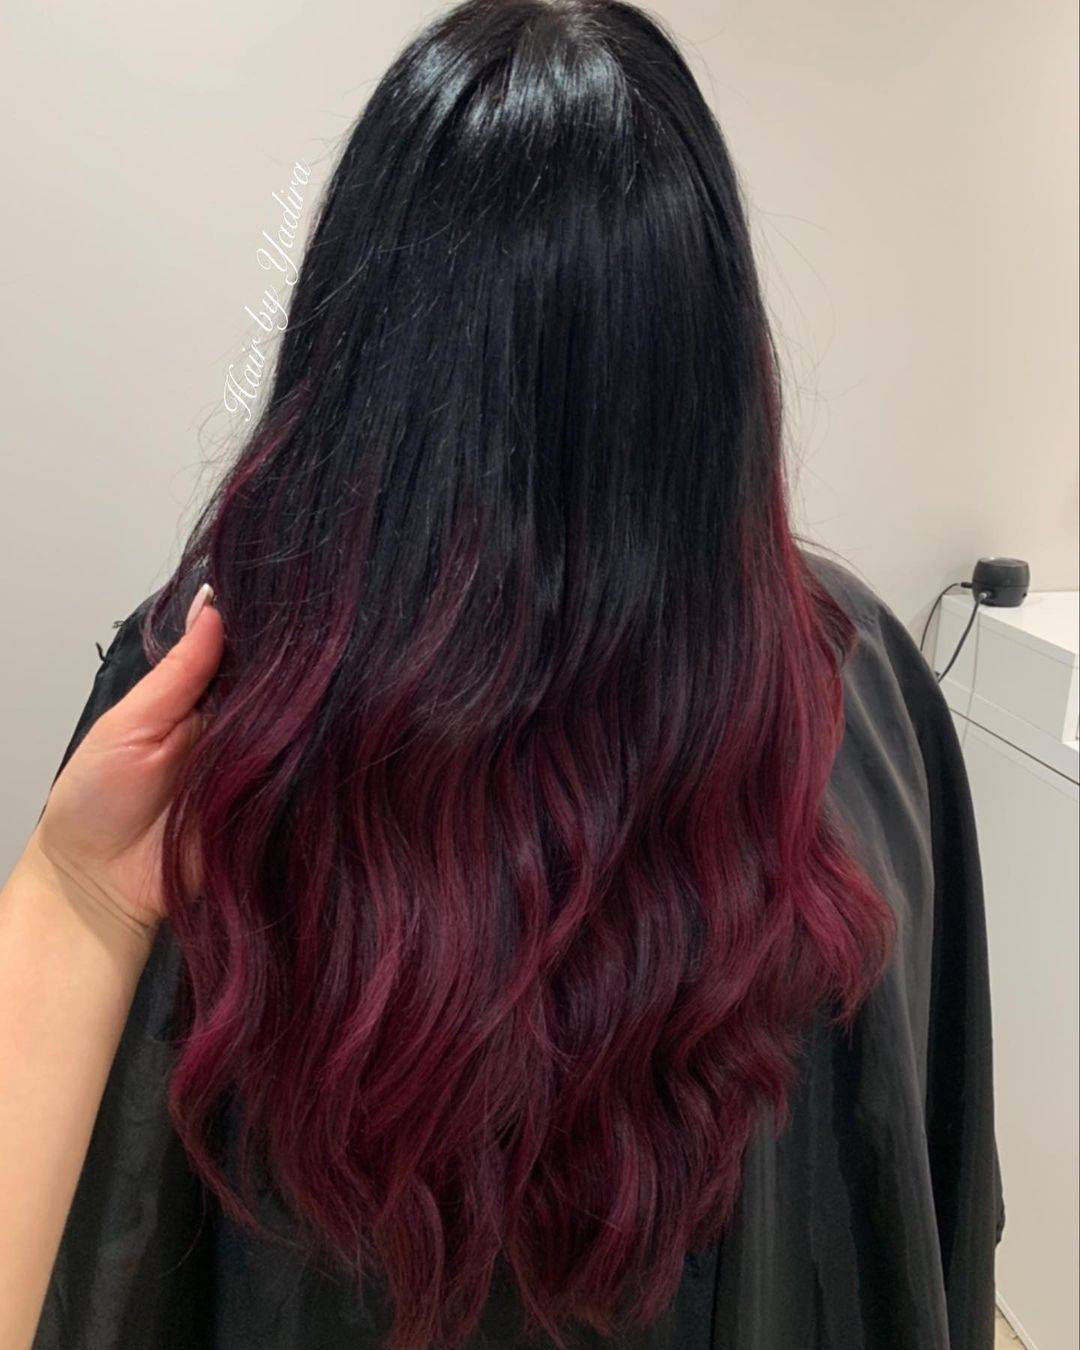 Burgundy hair color 78 burgundy hair color | burgundy hair color for women | burgundy hair color highlights Burgundy Hair Color